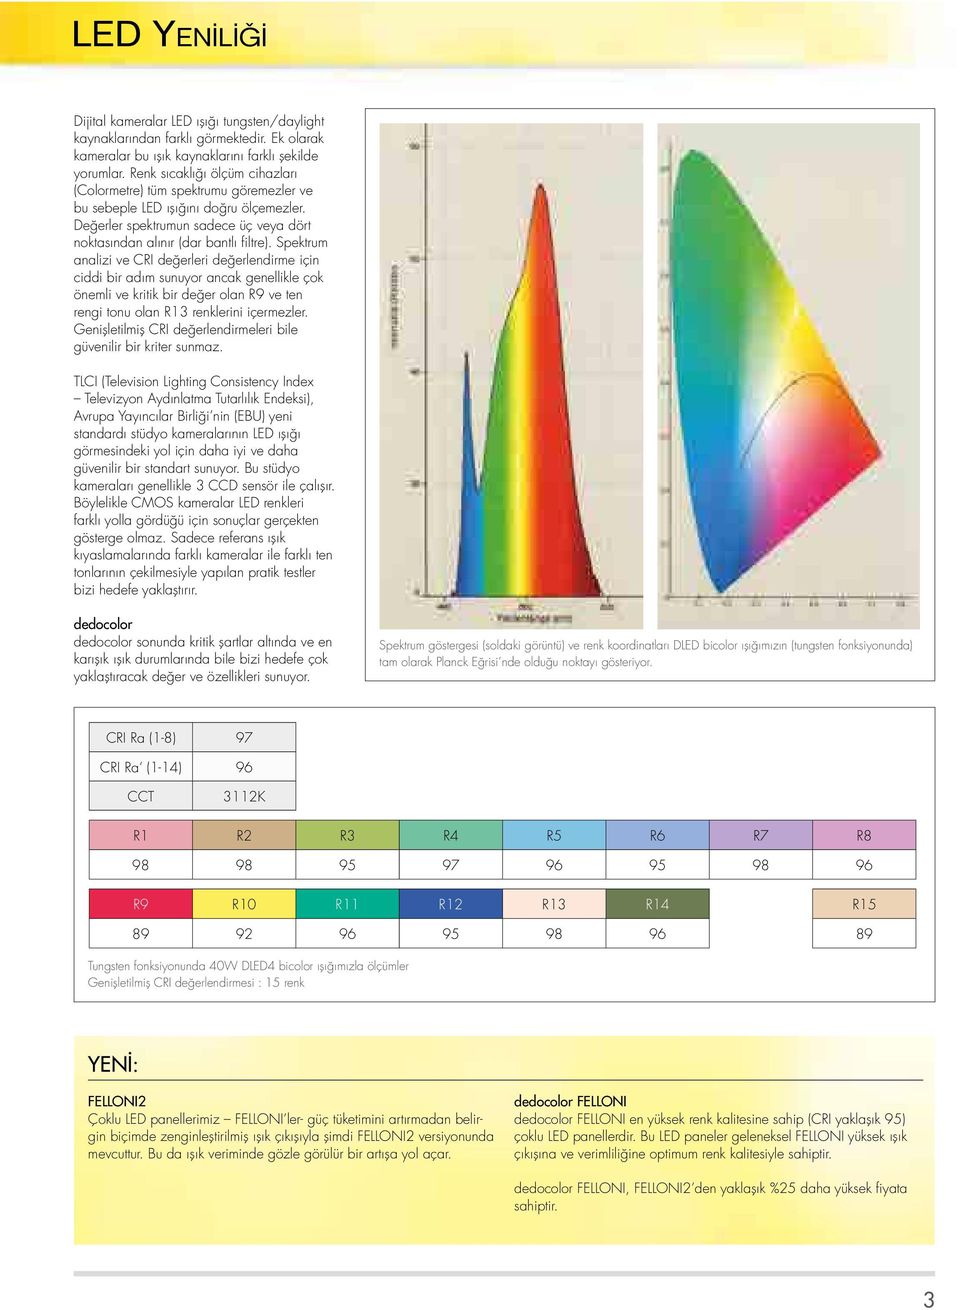 Spektrum analizi ve CRI değerleri değerlendirme için ciddi bir adım sunuyor ancak genellikle çok önemli ve kritik bir değer olan R9 ve ten rengi tonu olan R13 renklerini içermezler.